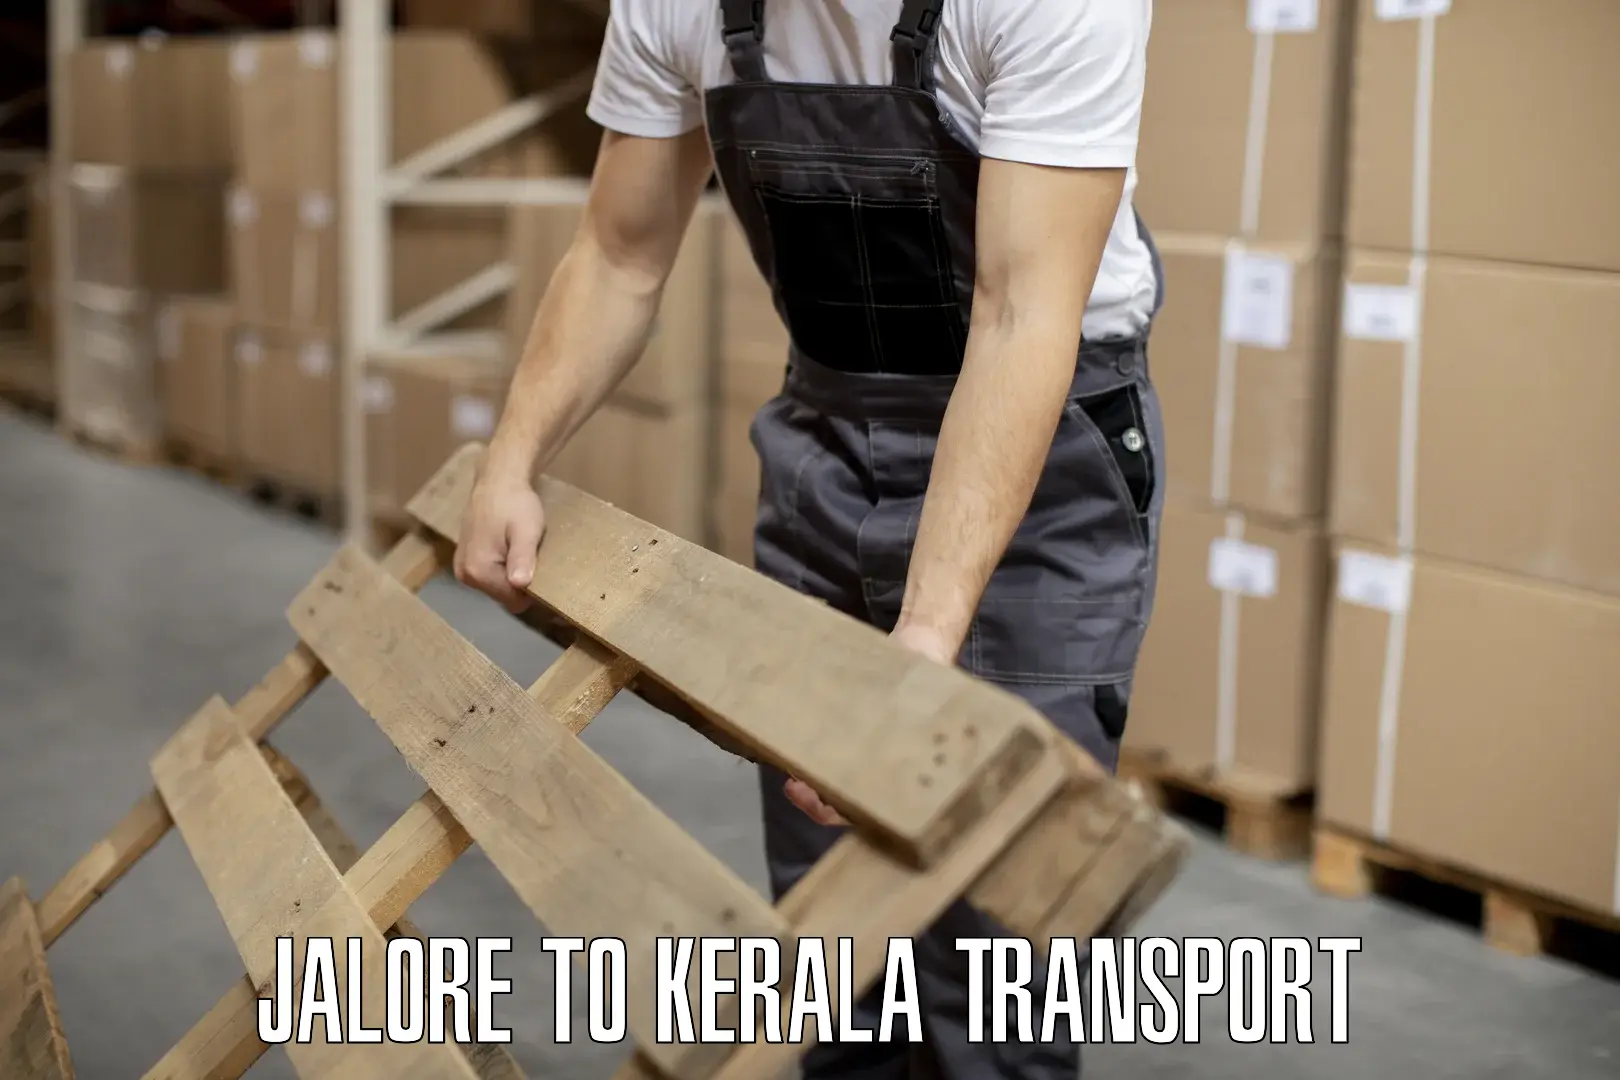 Nearest transport service in Jalore to Kerala